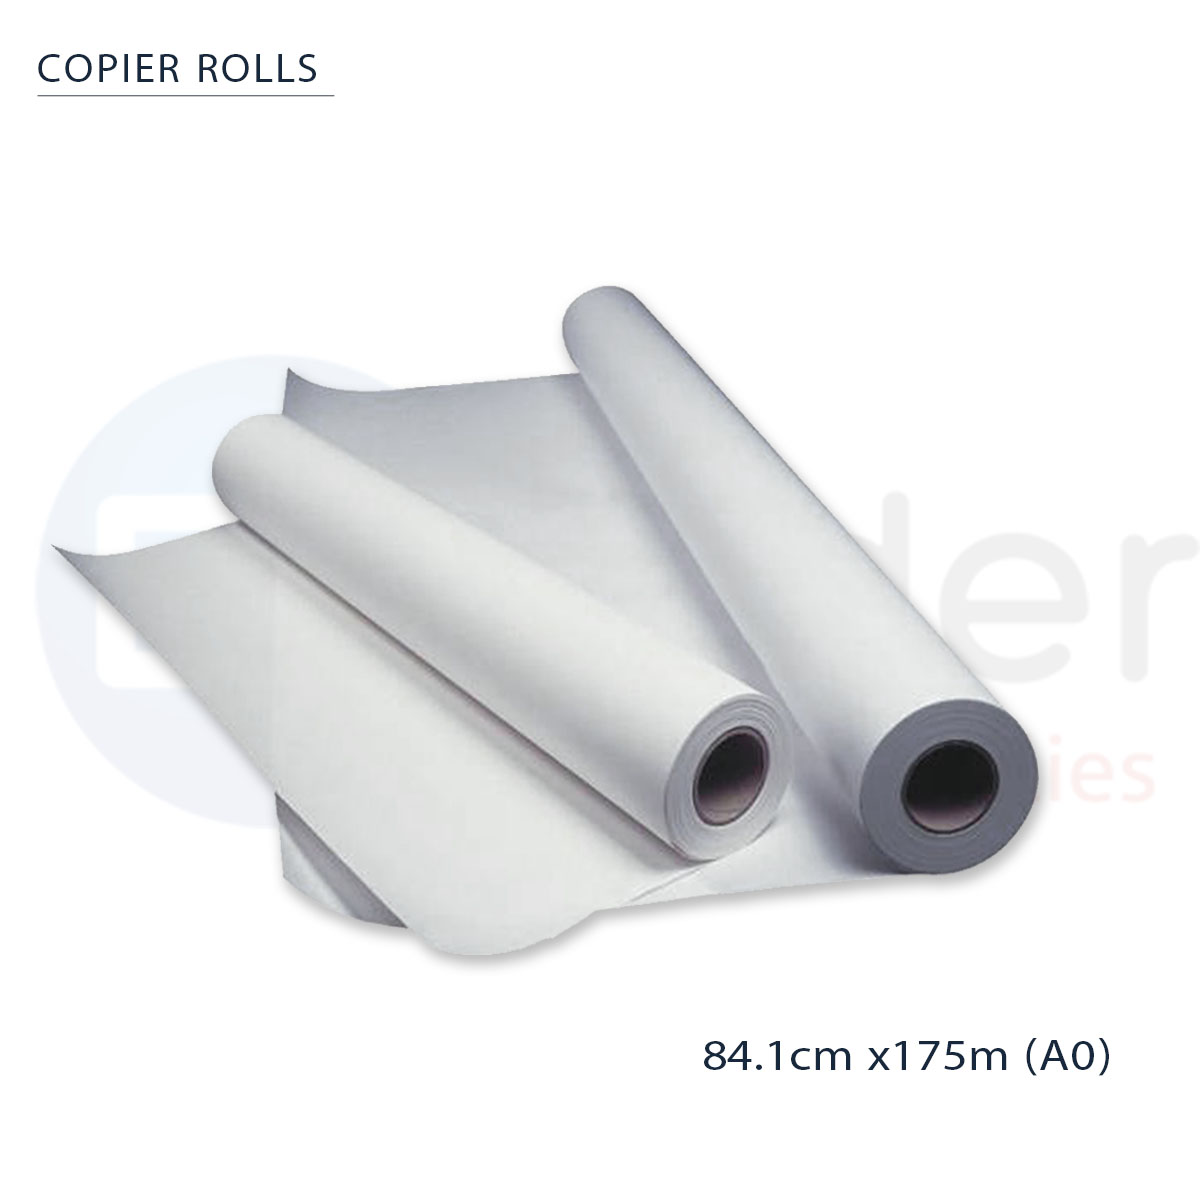 Copier rolls A0 (84.1cmx175m) KANGAS